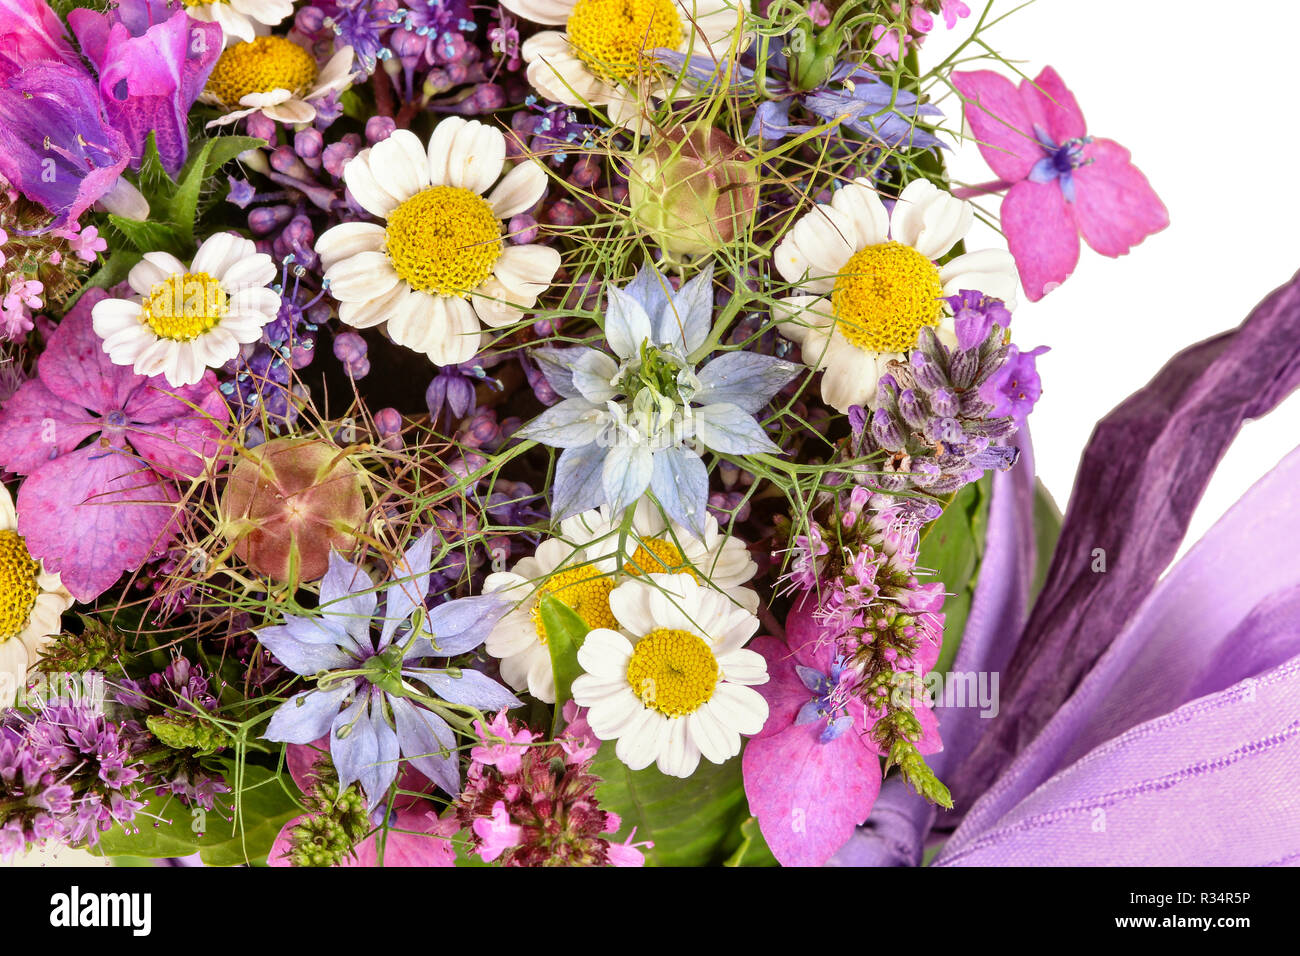 flower arrangement,table decoration Stock Photo